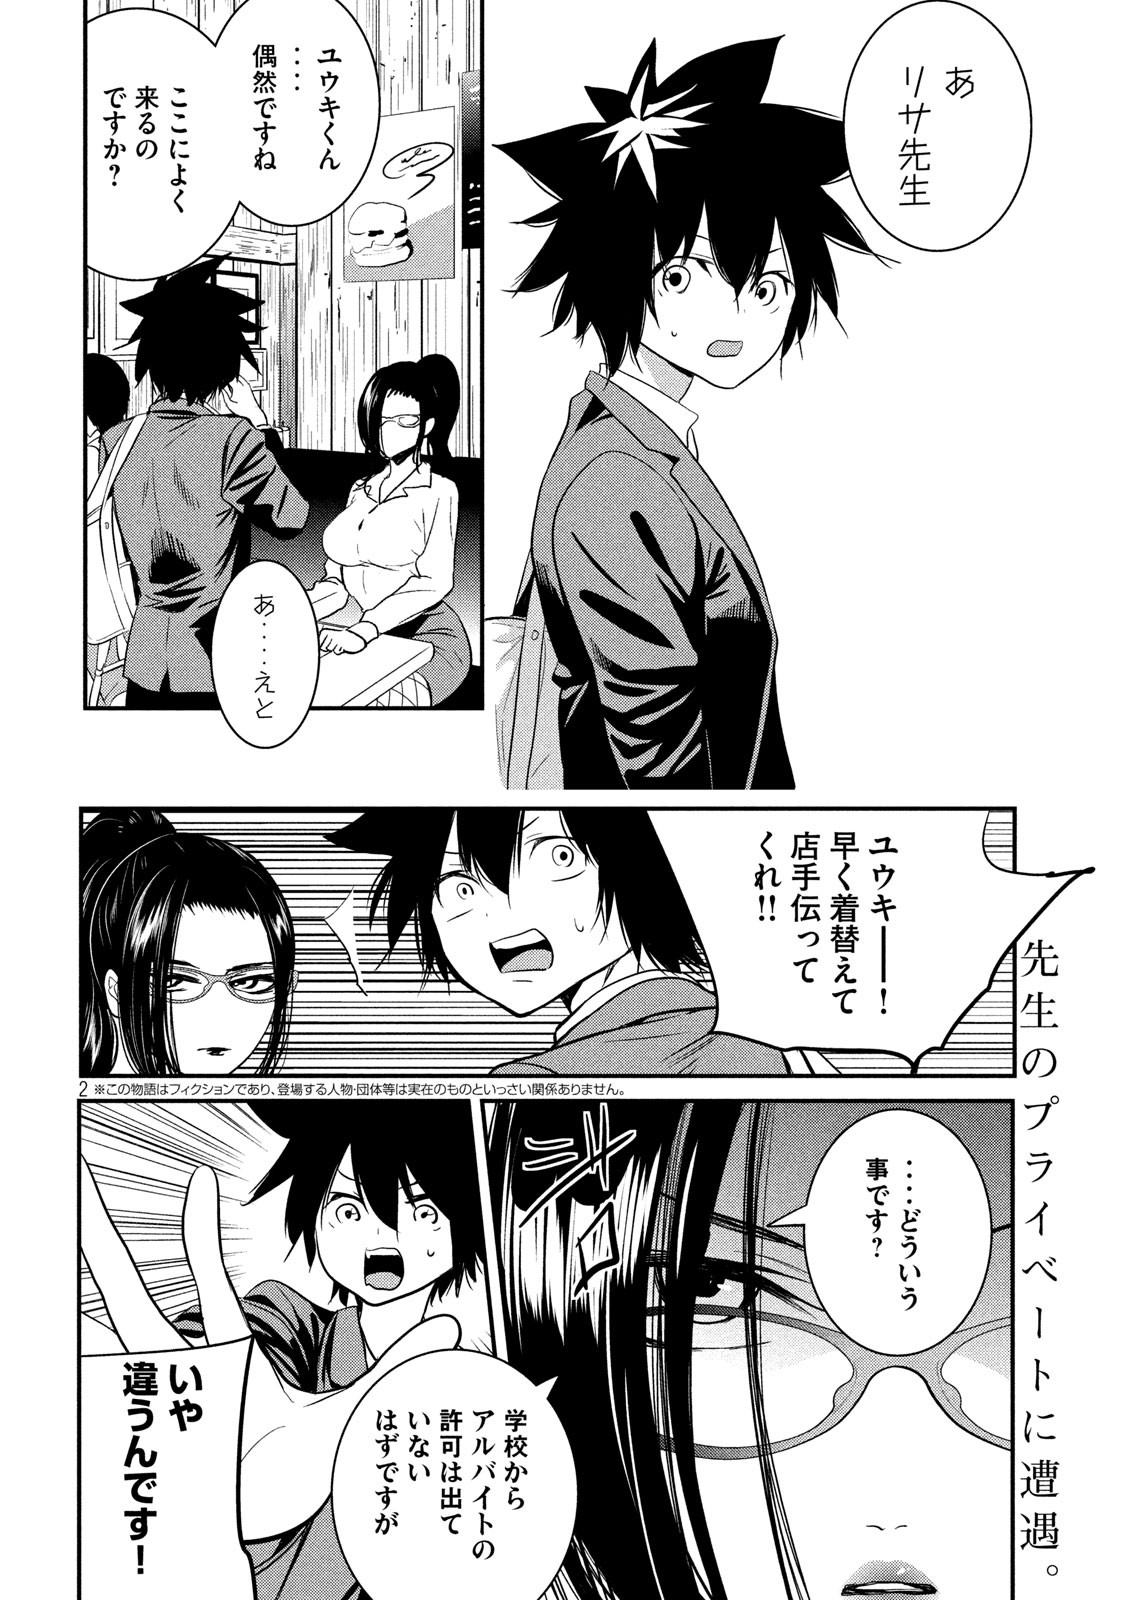 Eigo ×× Sensei - Chapter 2 - Page 2